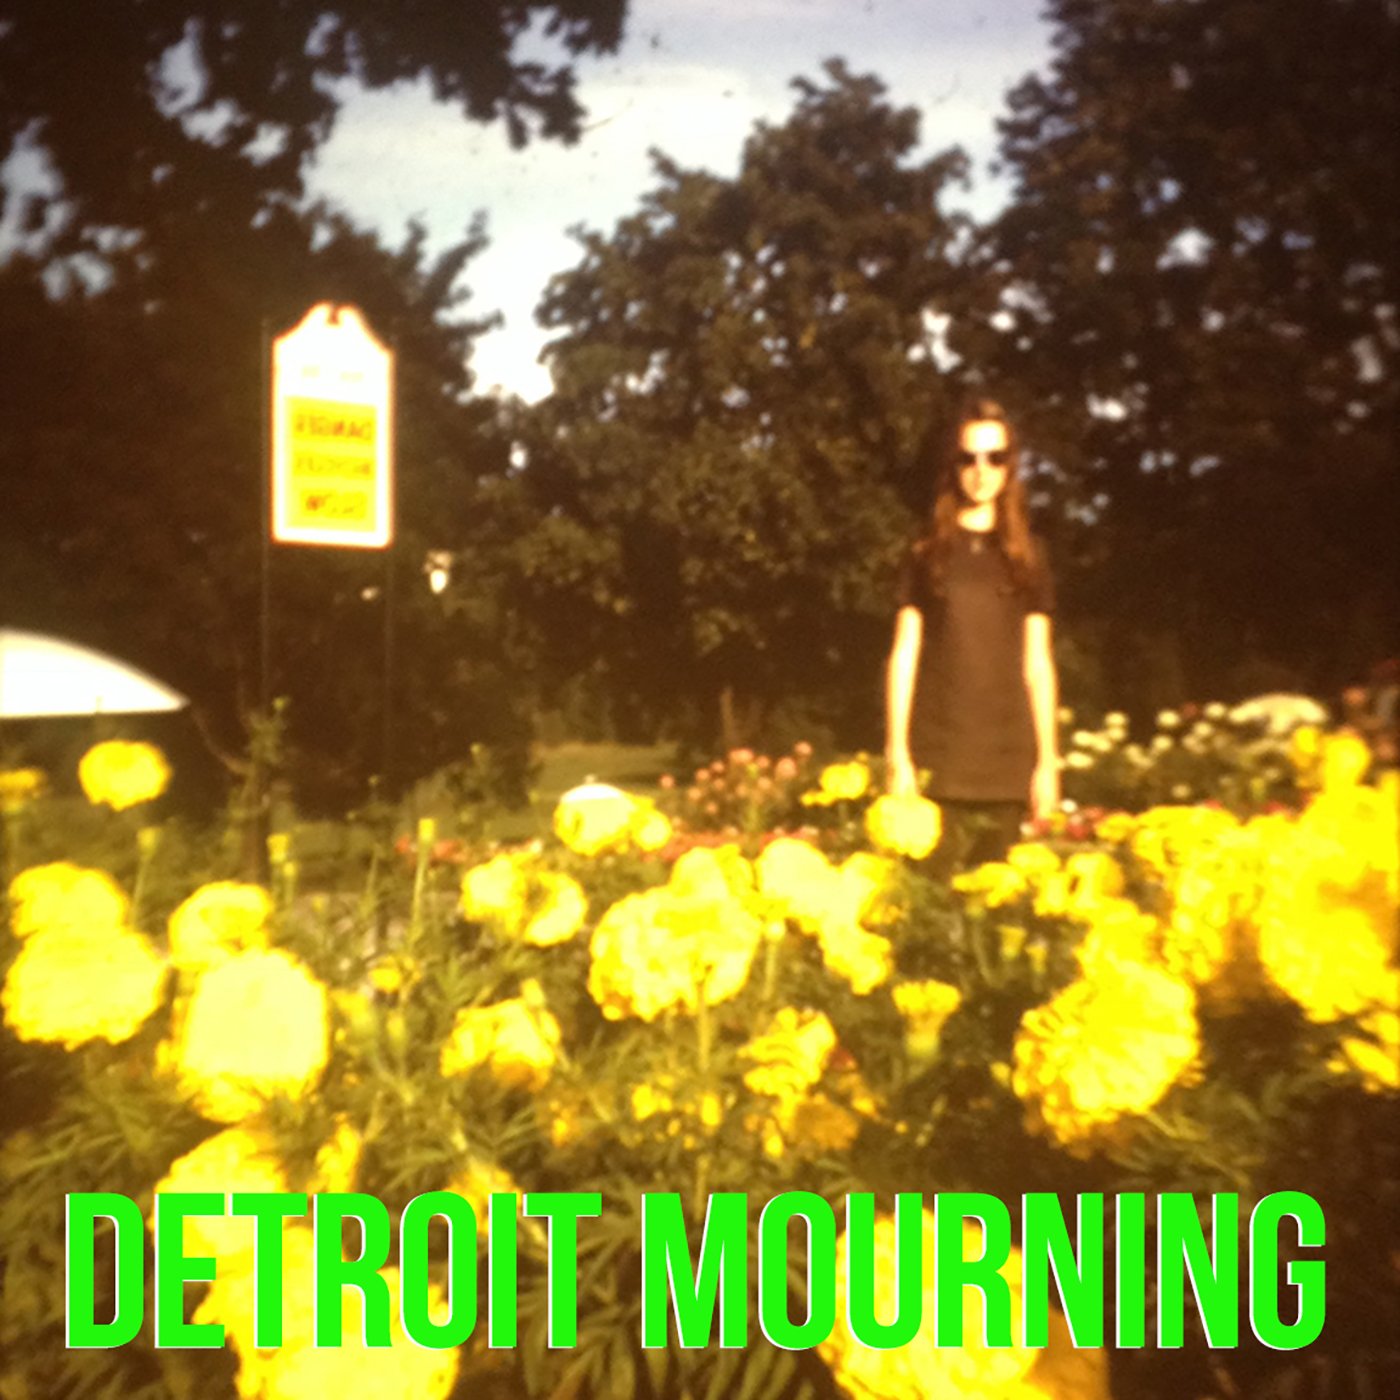 Detroit_Mourning_Cover.jpg